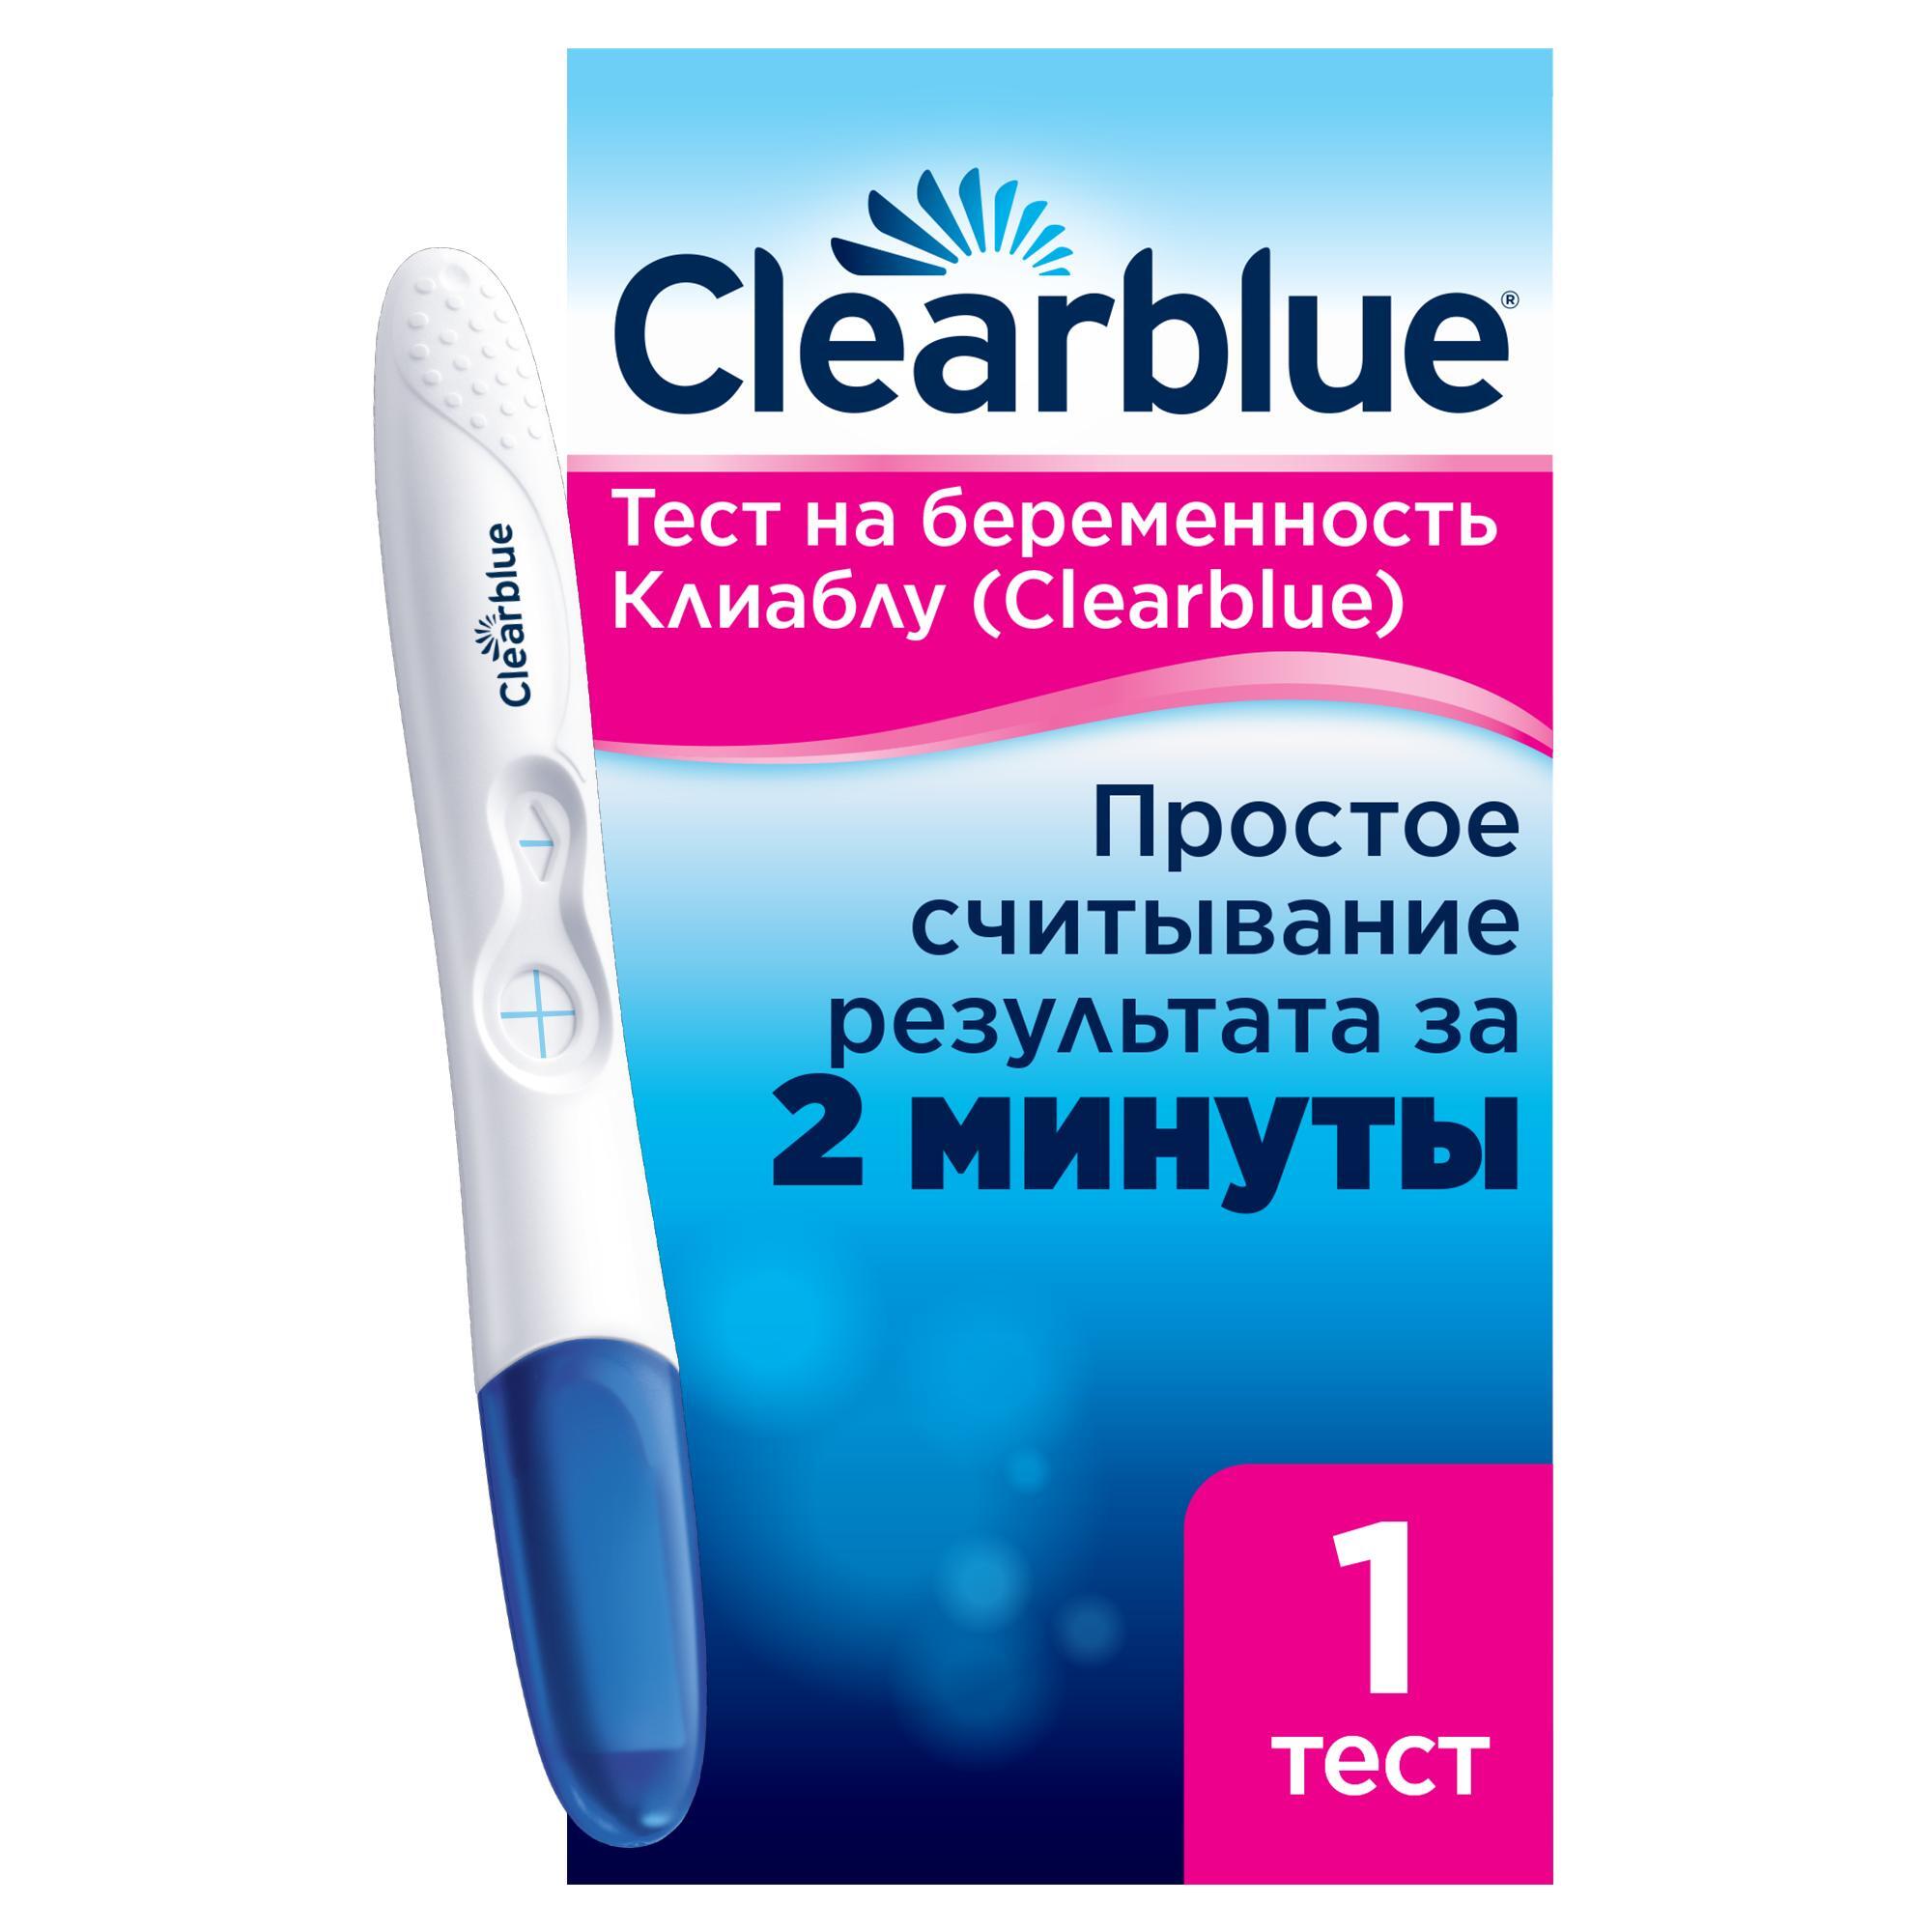 Clearblue / Тест на Беременность, быстрое ОБНАРУЖЕНИЕ, 2 теста